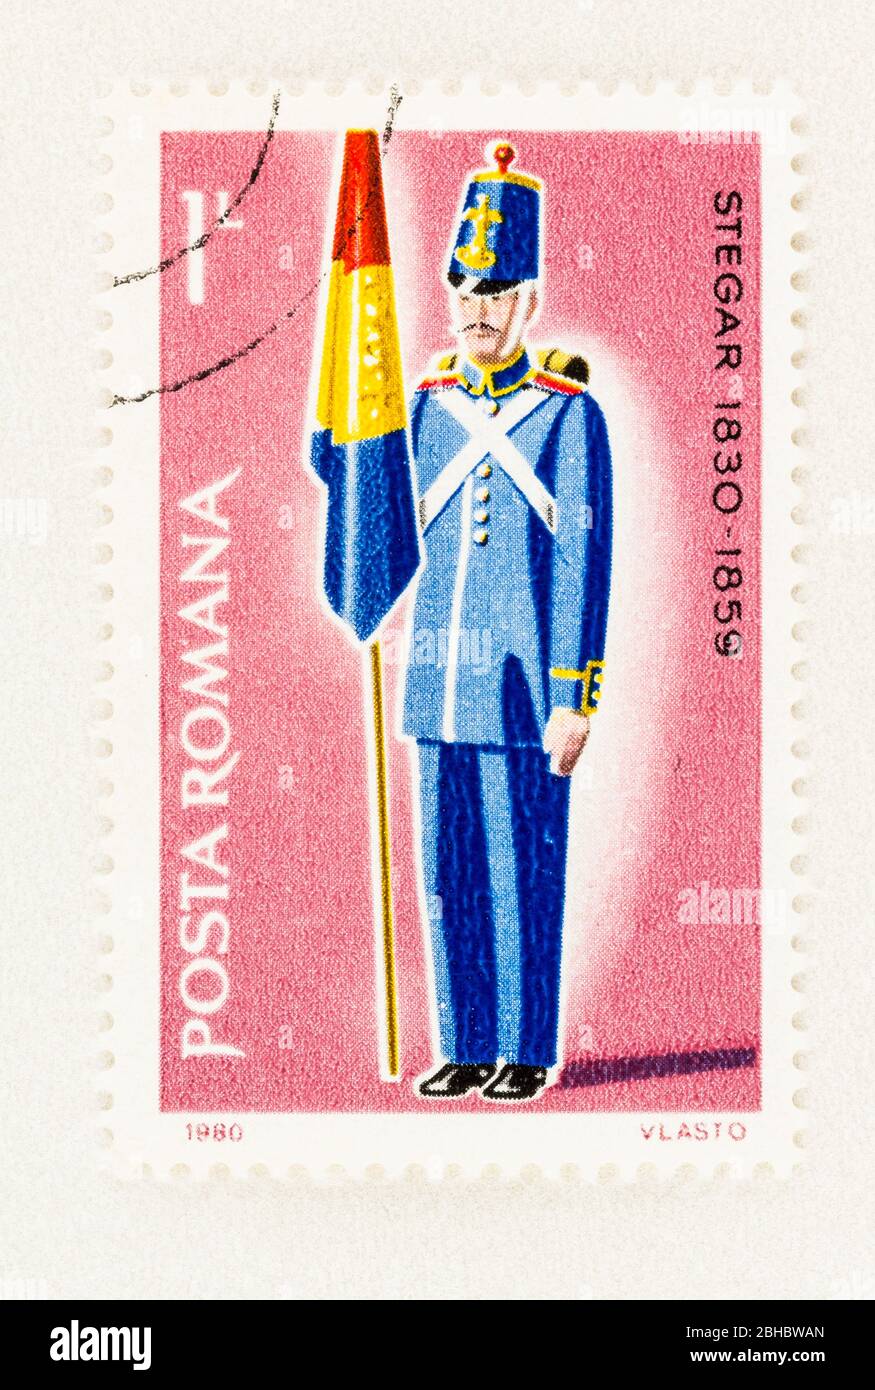 SEATTLE WASHINGTON - 23 aprile 2020: 1980 francobollo rumeno con bandiera in uniforme militare. Scott n. 2980 Foto Stock